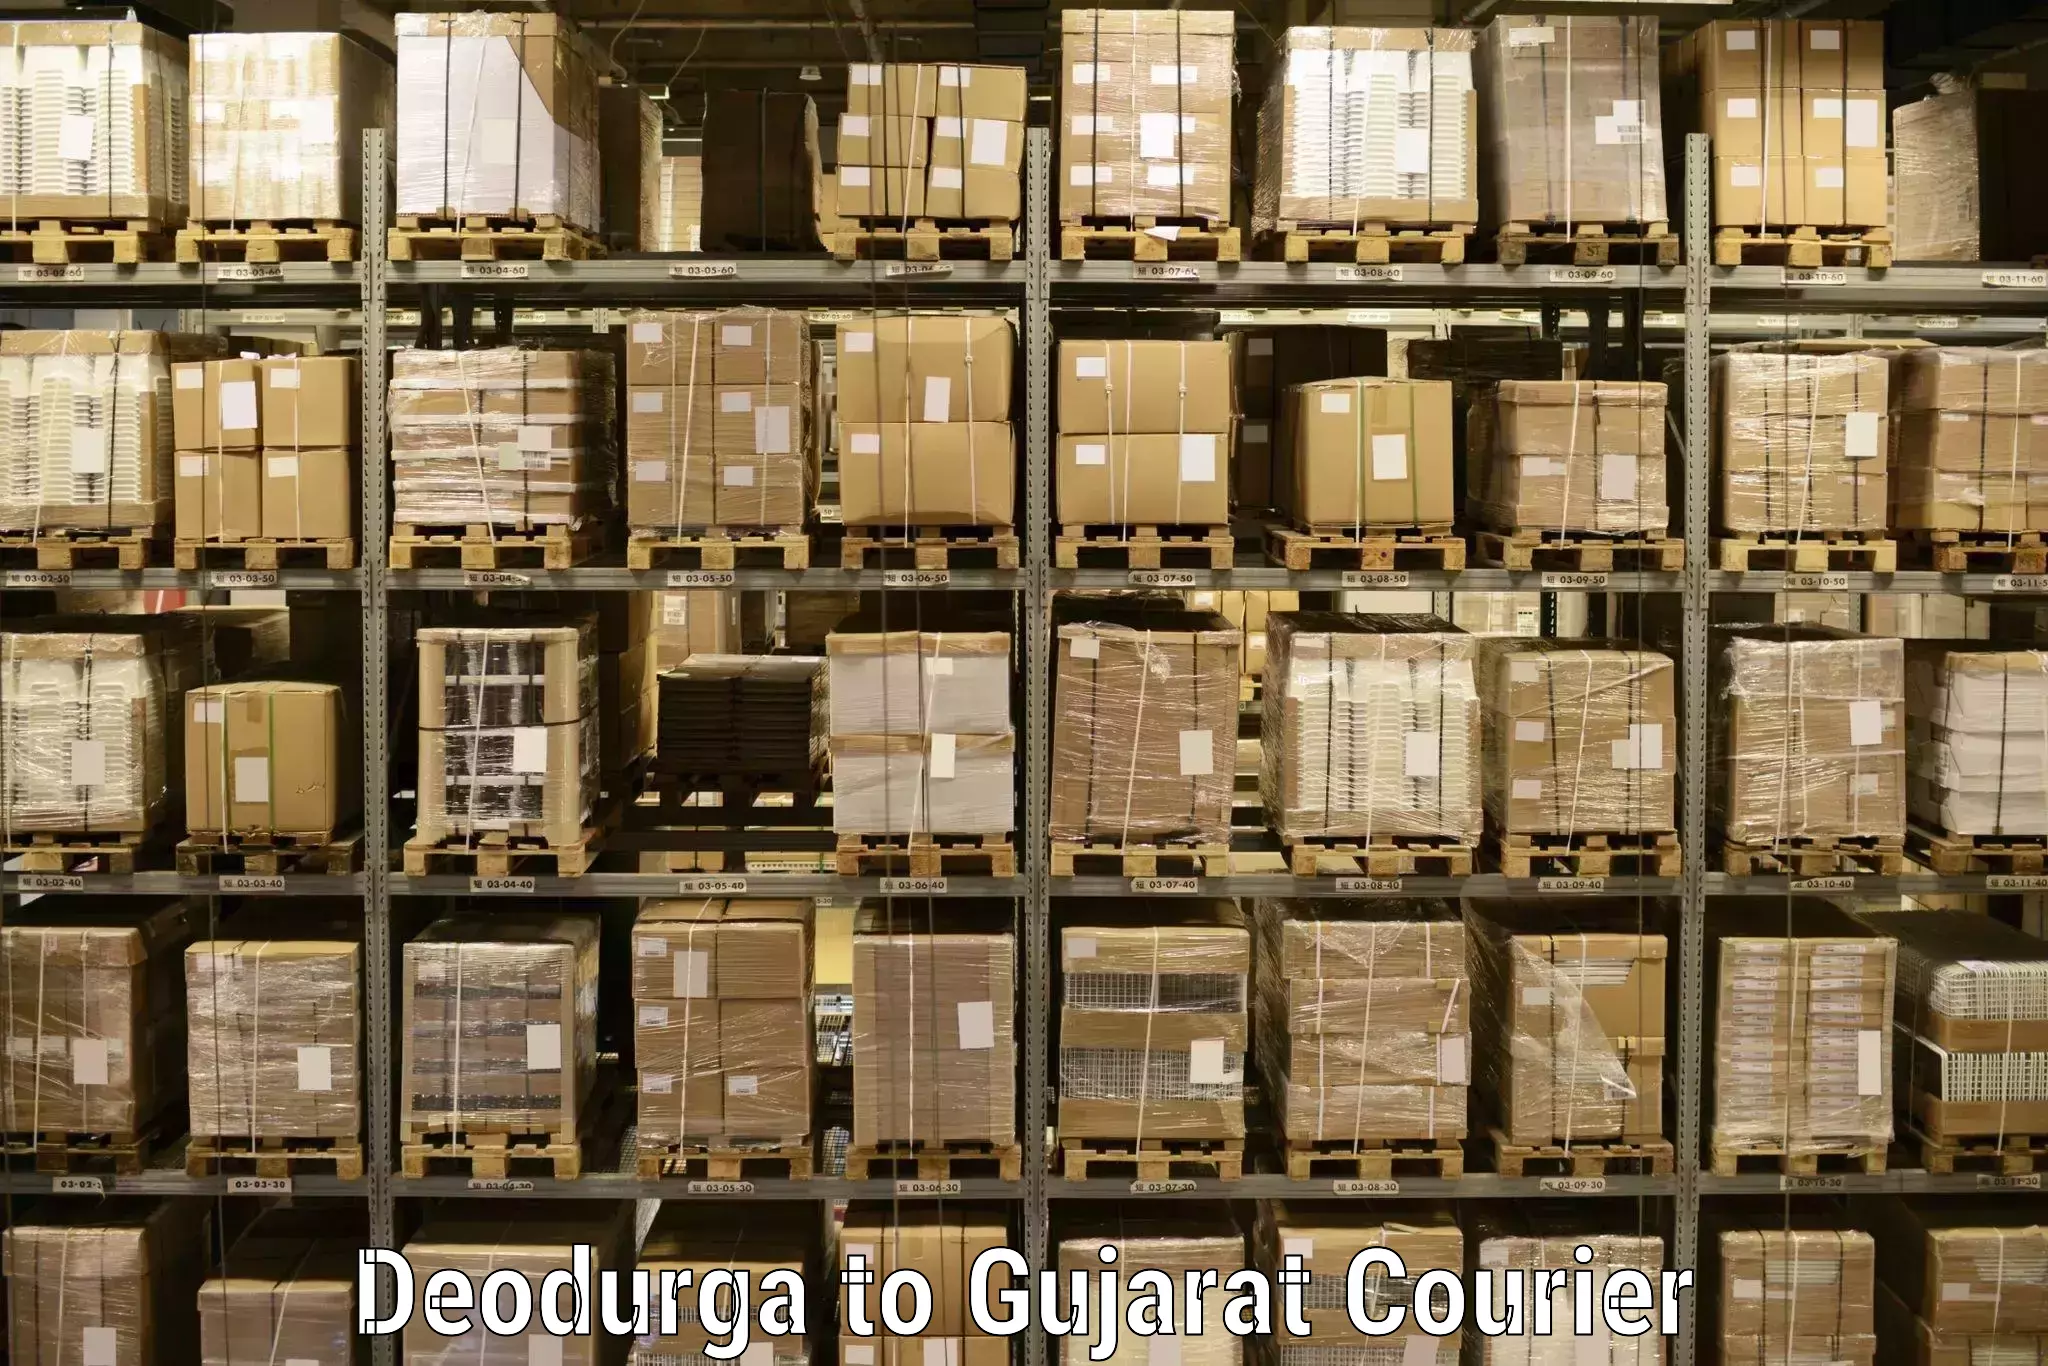 Cargo courier service Deodurga to Vadodara